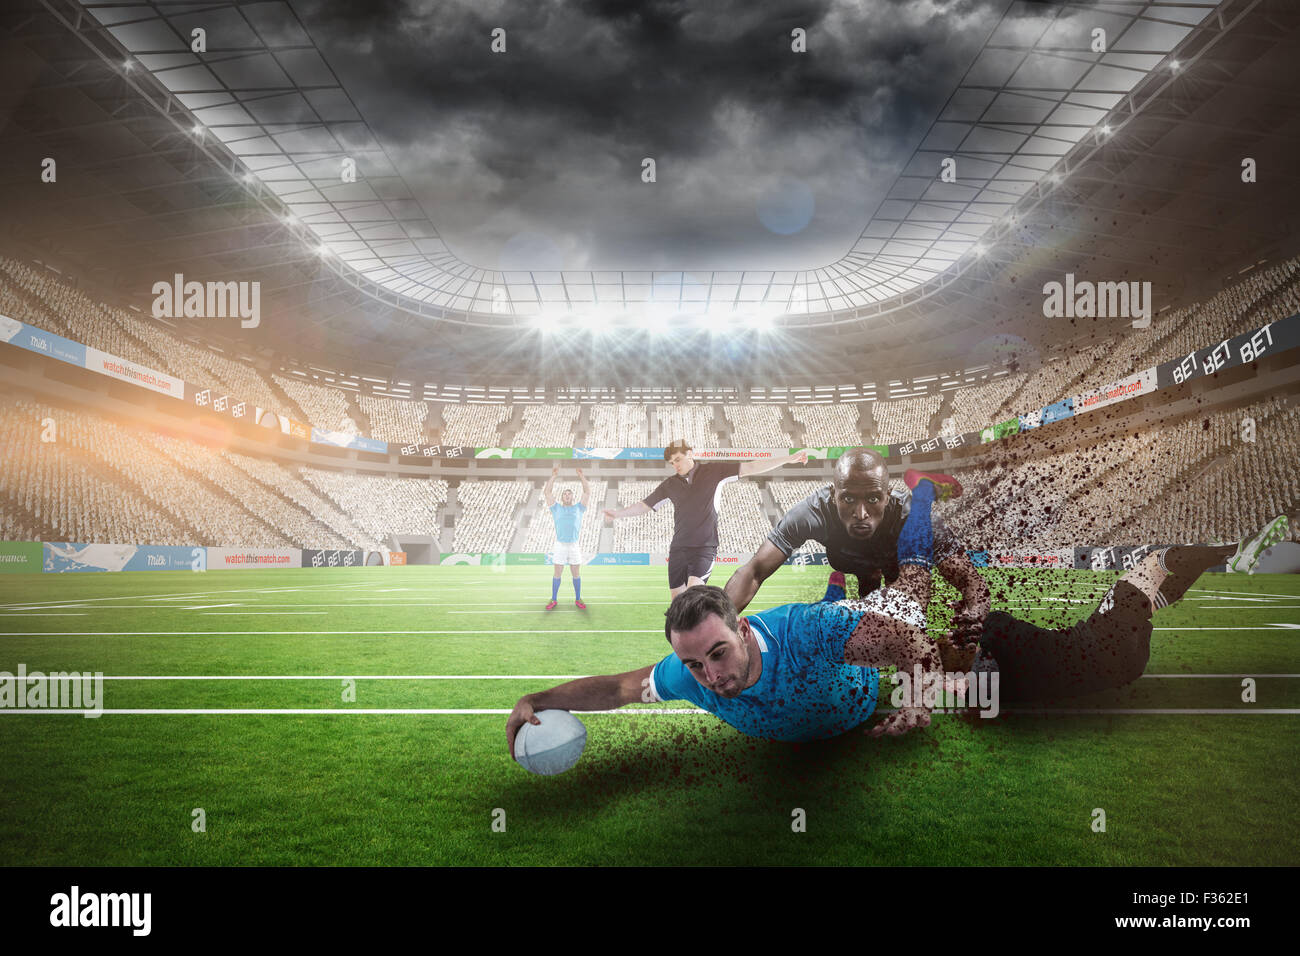 Imagen compuesta de jugador de rugby haciendo un drop kick Foto de stock